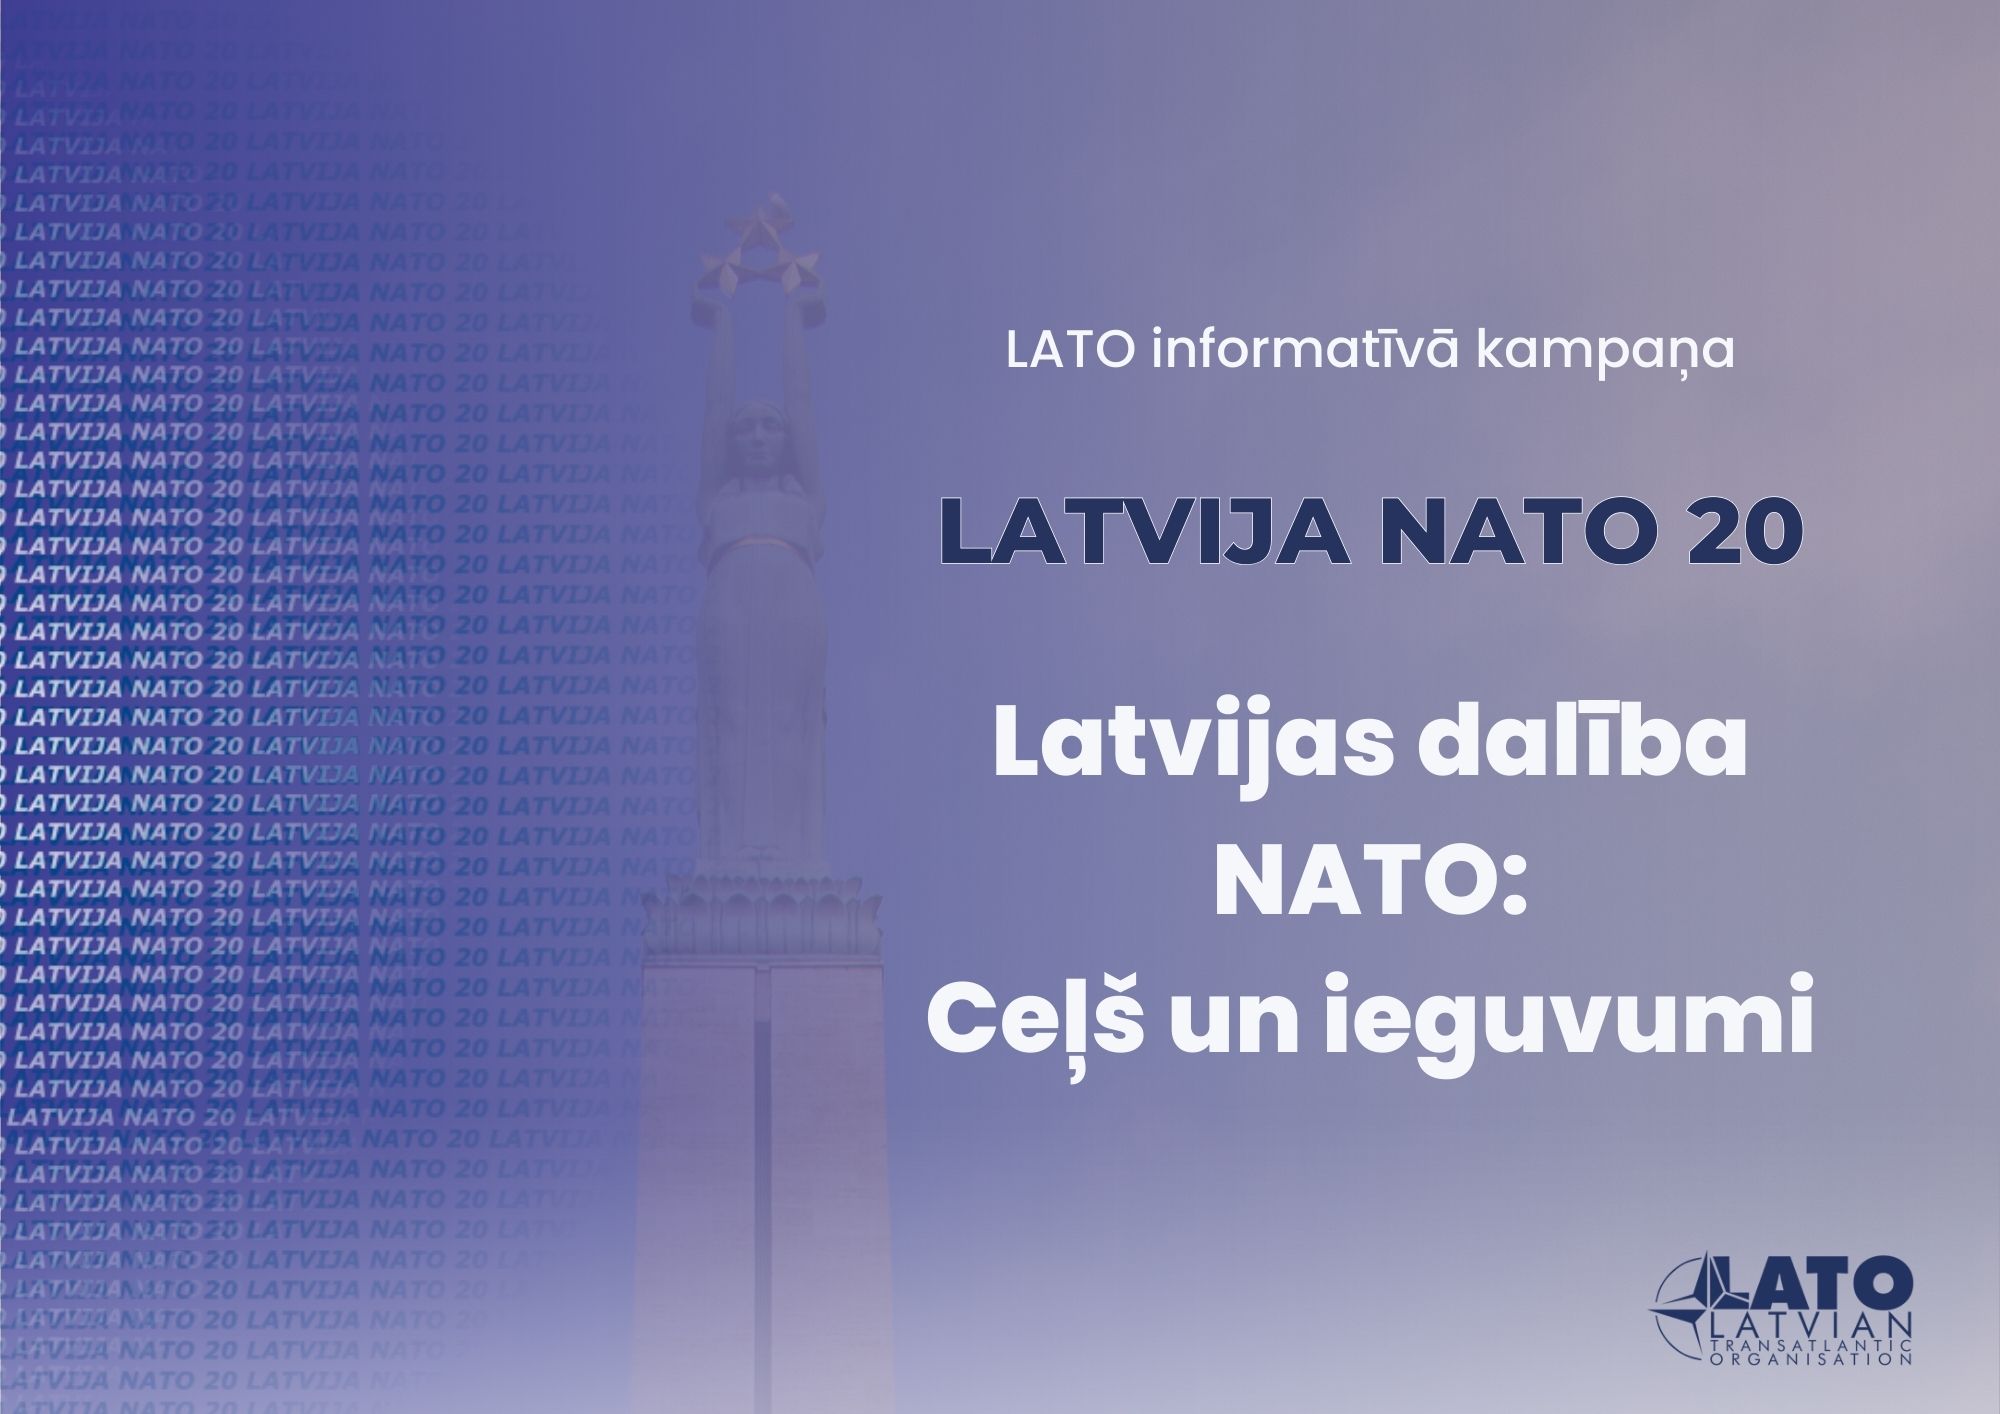 LATO uzsāk informatīvo kampaņu, godinot Latvijas dalības NATO 20. gadadienu.